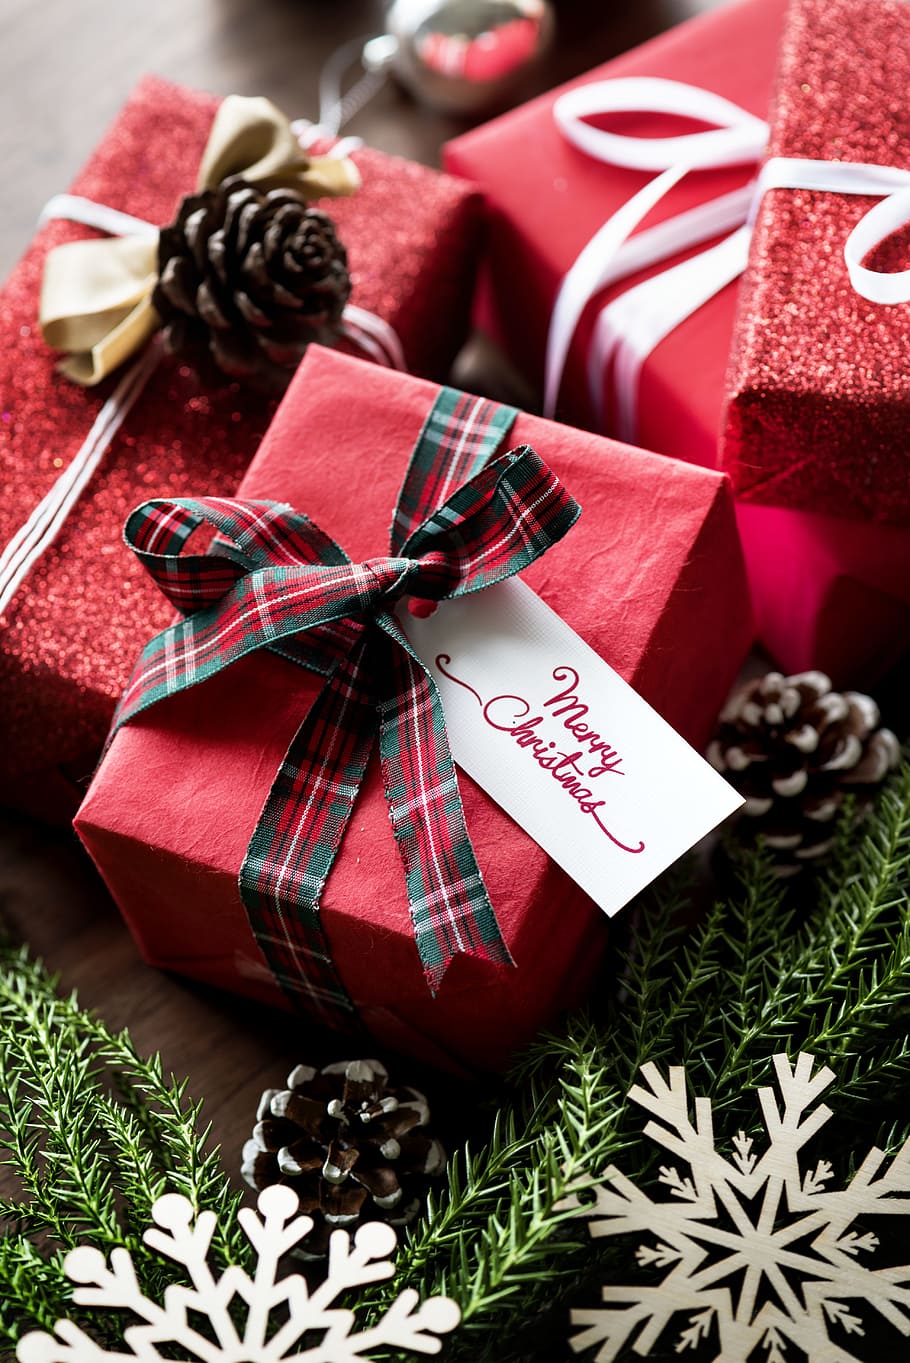 caja, tarjeta, celebrar, celebracion, navidad, decorar, decoracion, festival, festivo, regalo